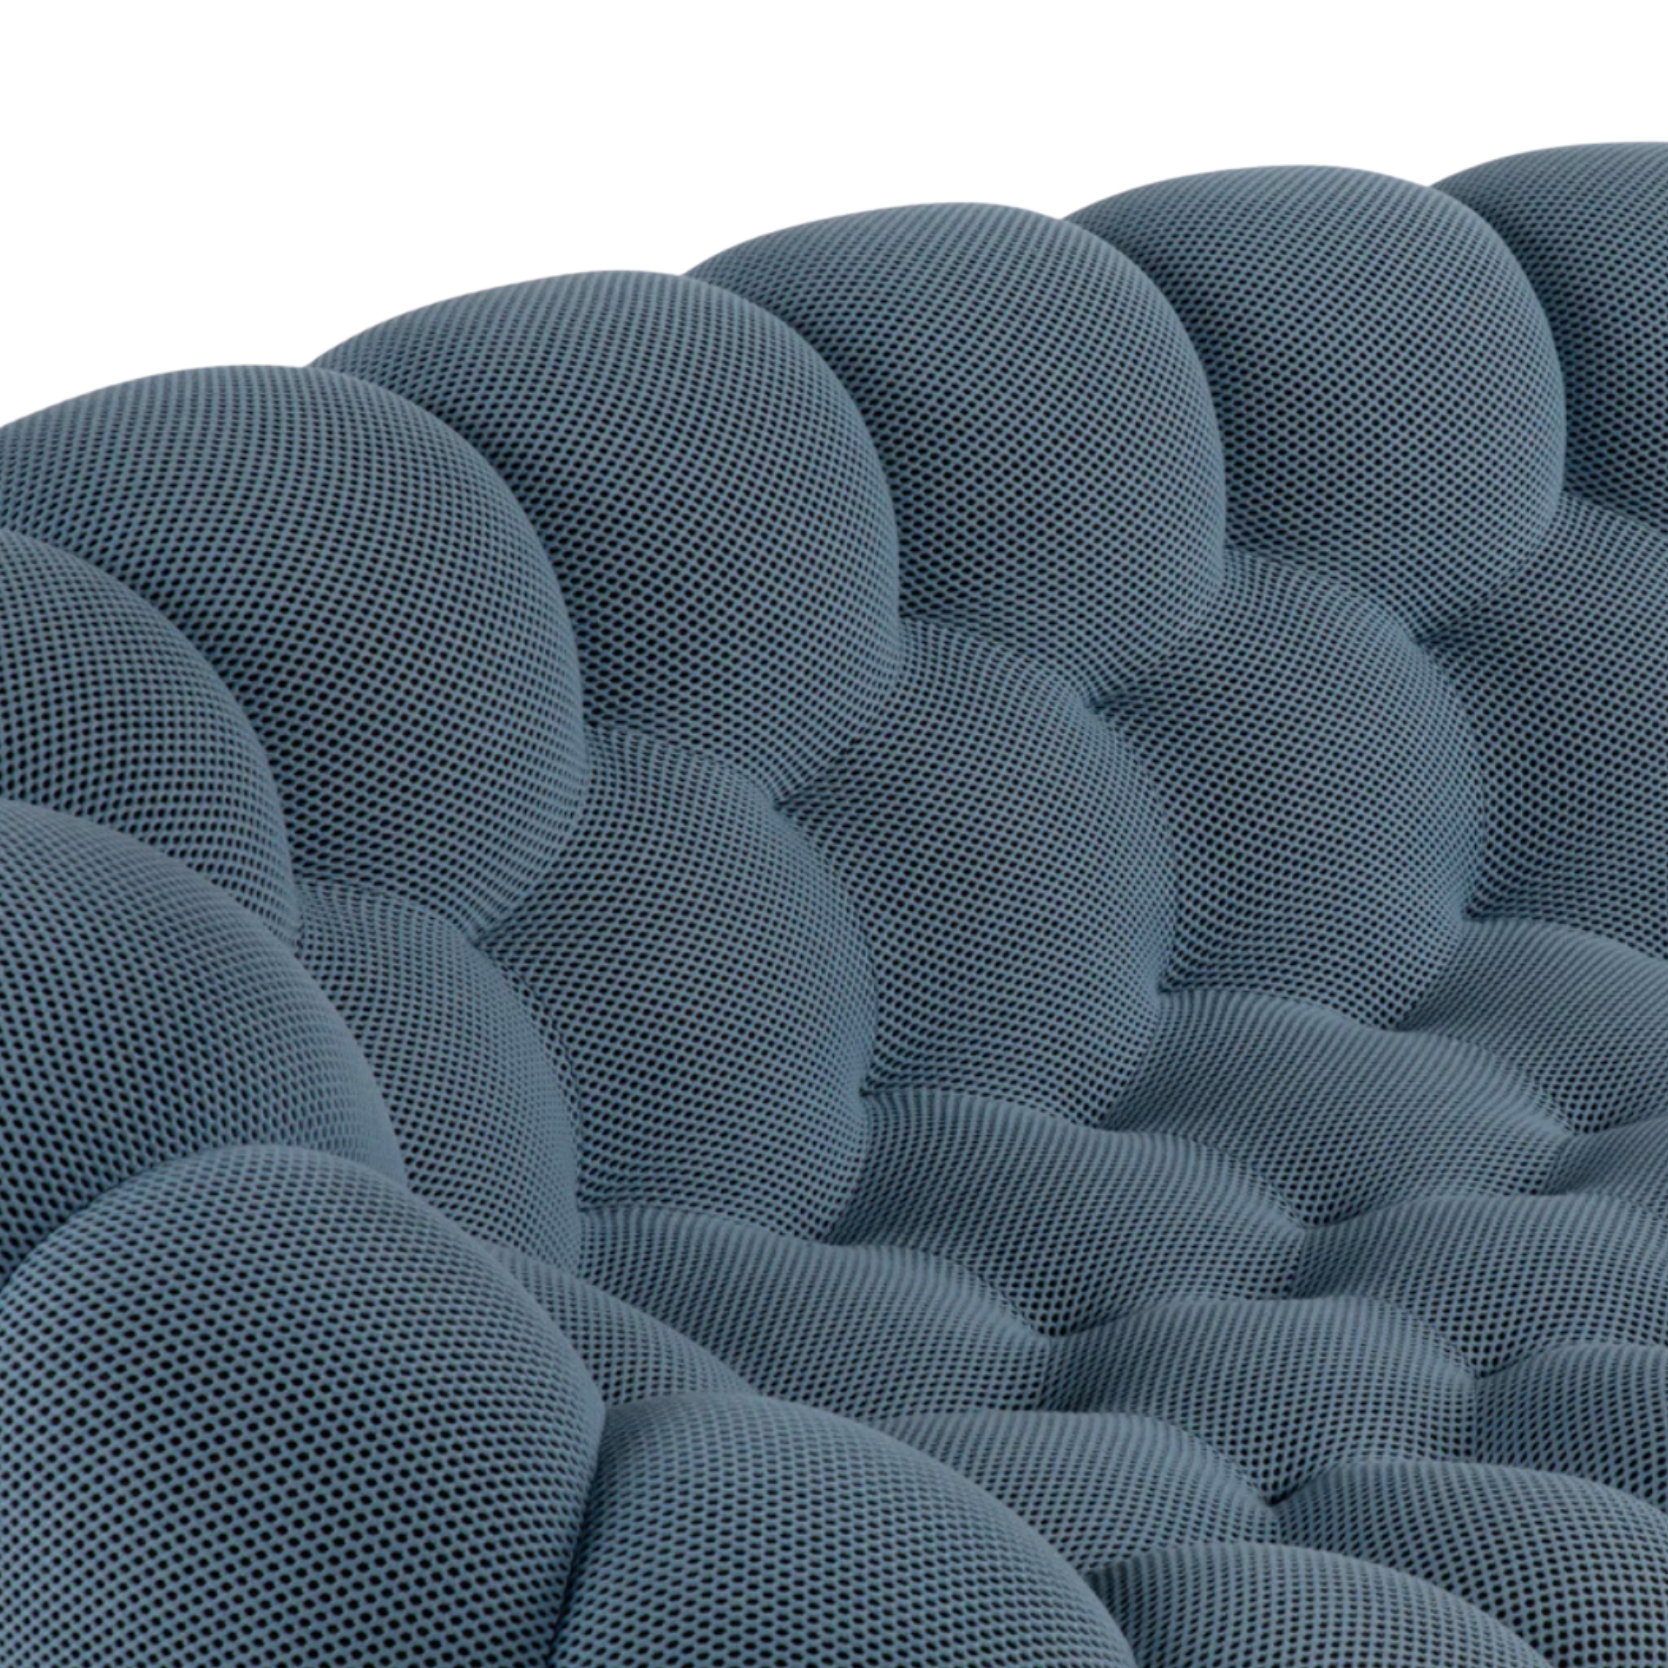 Bellissimo divano+pouf Bubble di #RocheBobois 😍 (foto d…